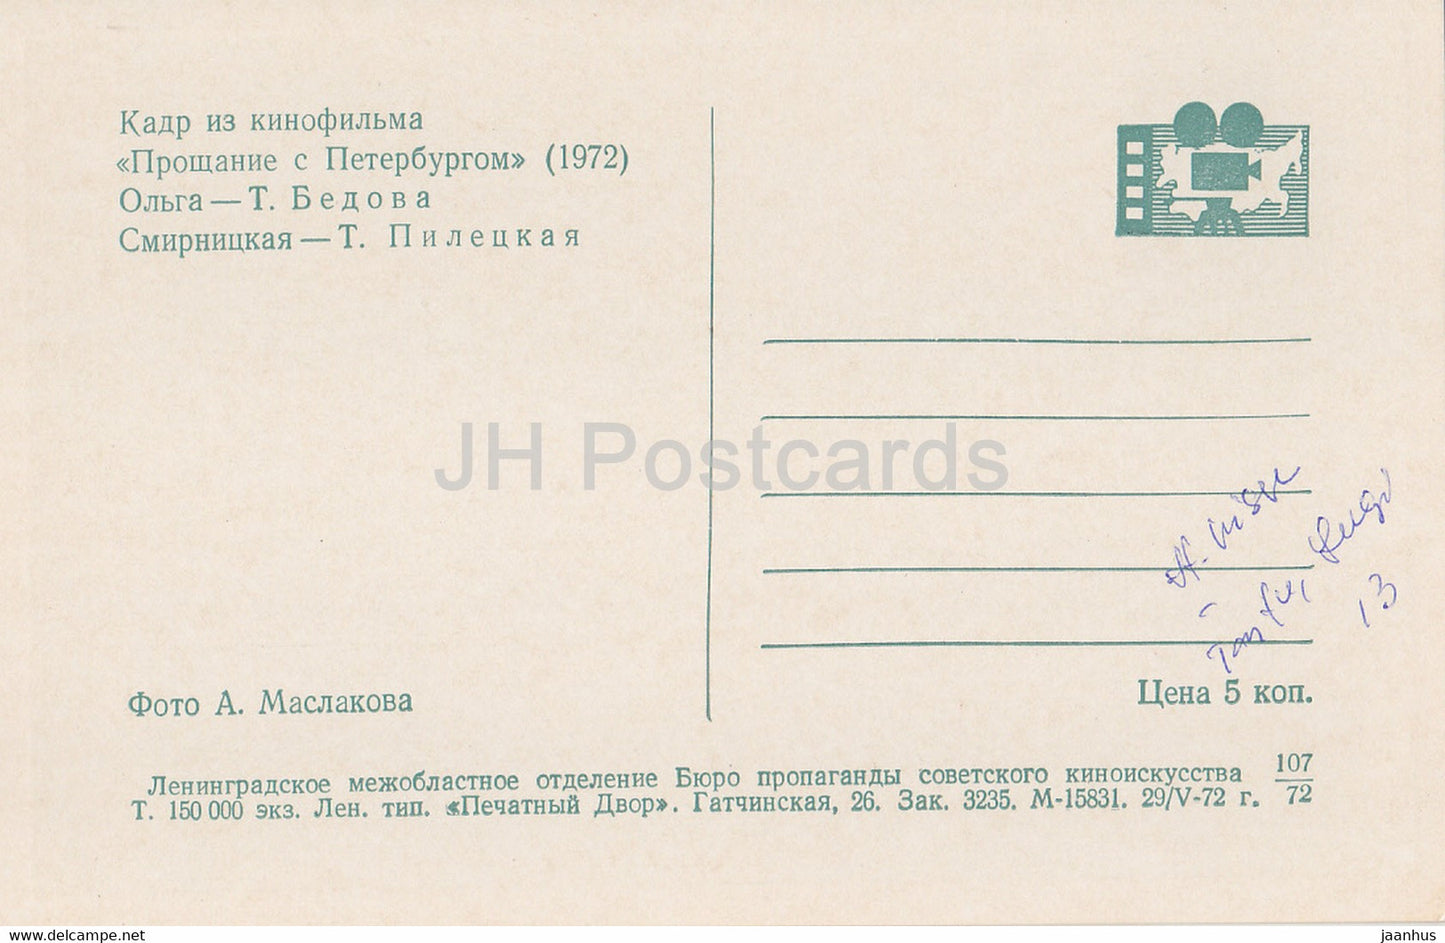 Adieu à Saint-Pétersbourg - actrice T. Bedova T. Piletskaya - Film - Film - soviétique - 1972 - Russie URSS - inutilisé